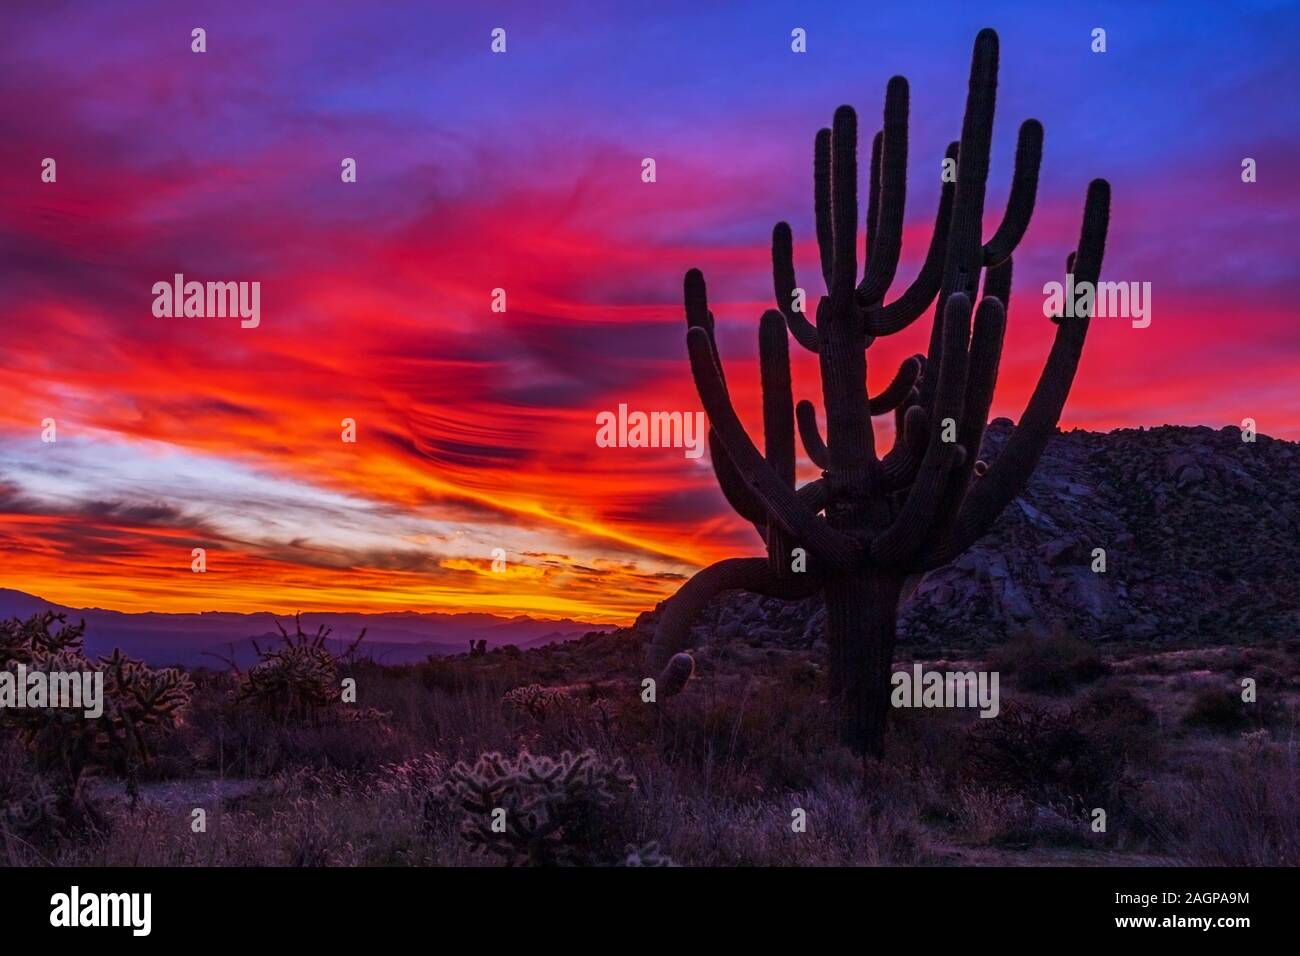 Bunte und sehr lebendige Arizona Sonnenaufgang Landschaft mit einem Saguaro Kaktus in foregrounf Stockfoto